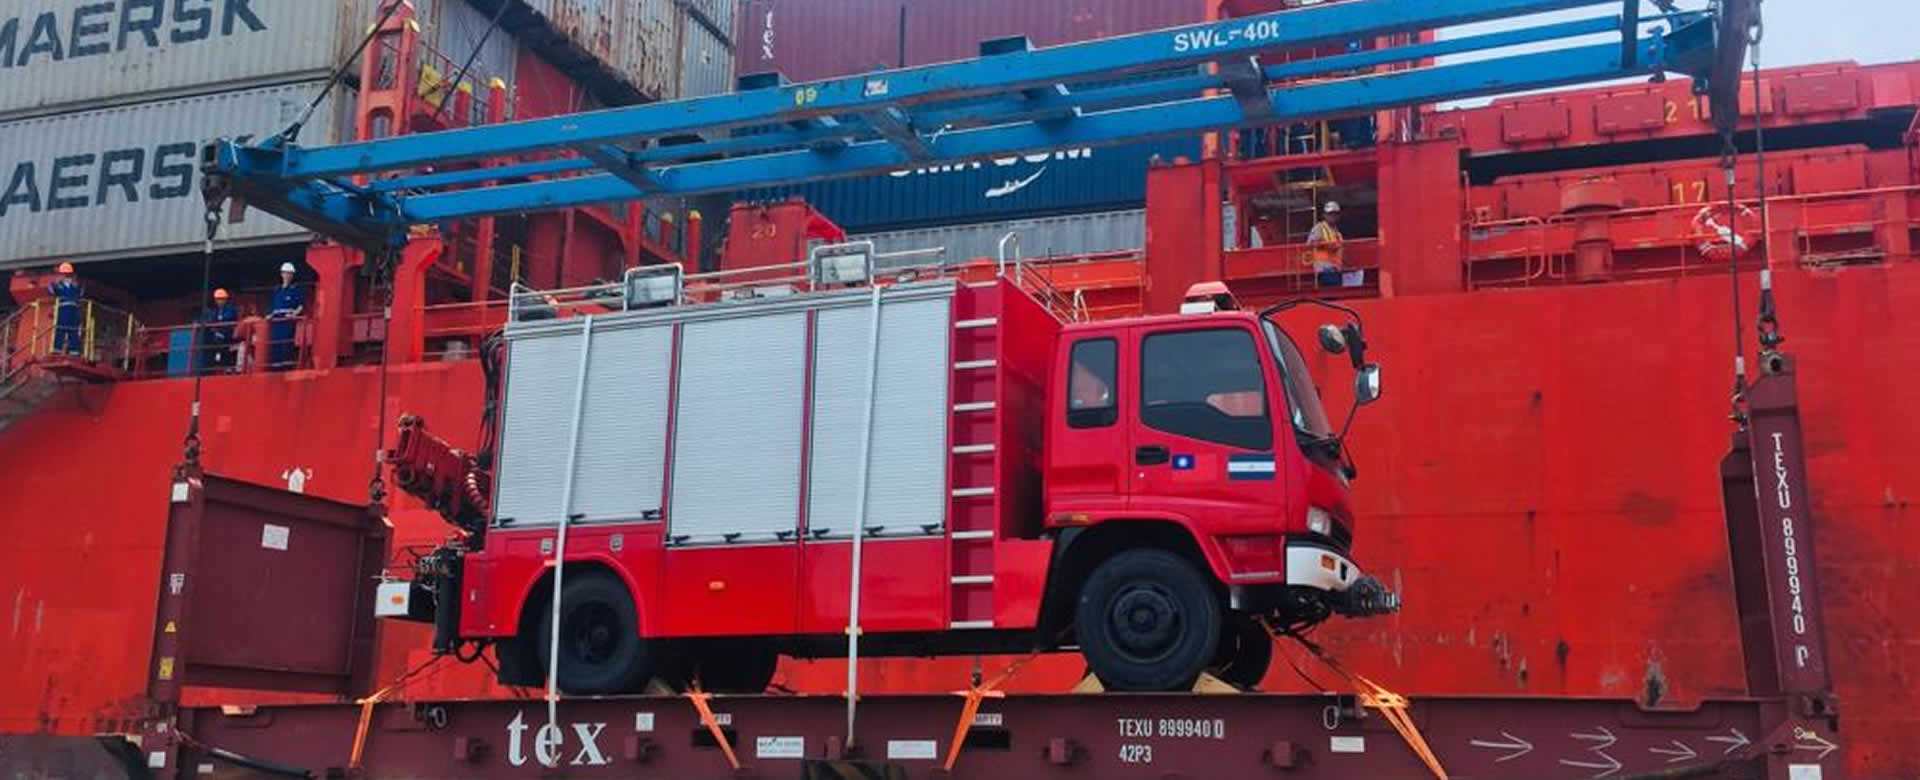 Puerto Corinto, Nicaragua | Bomberos Unificados reciben camiones contra incendios por parte de Taiwán